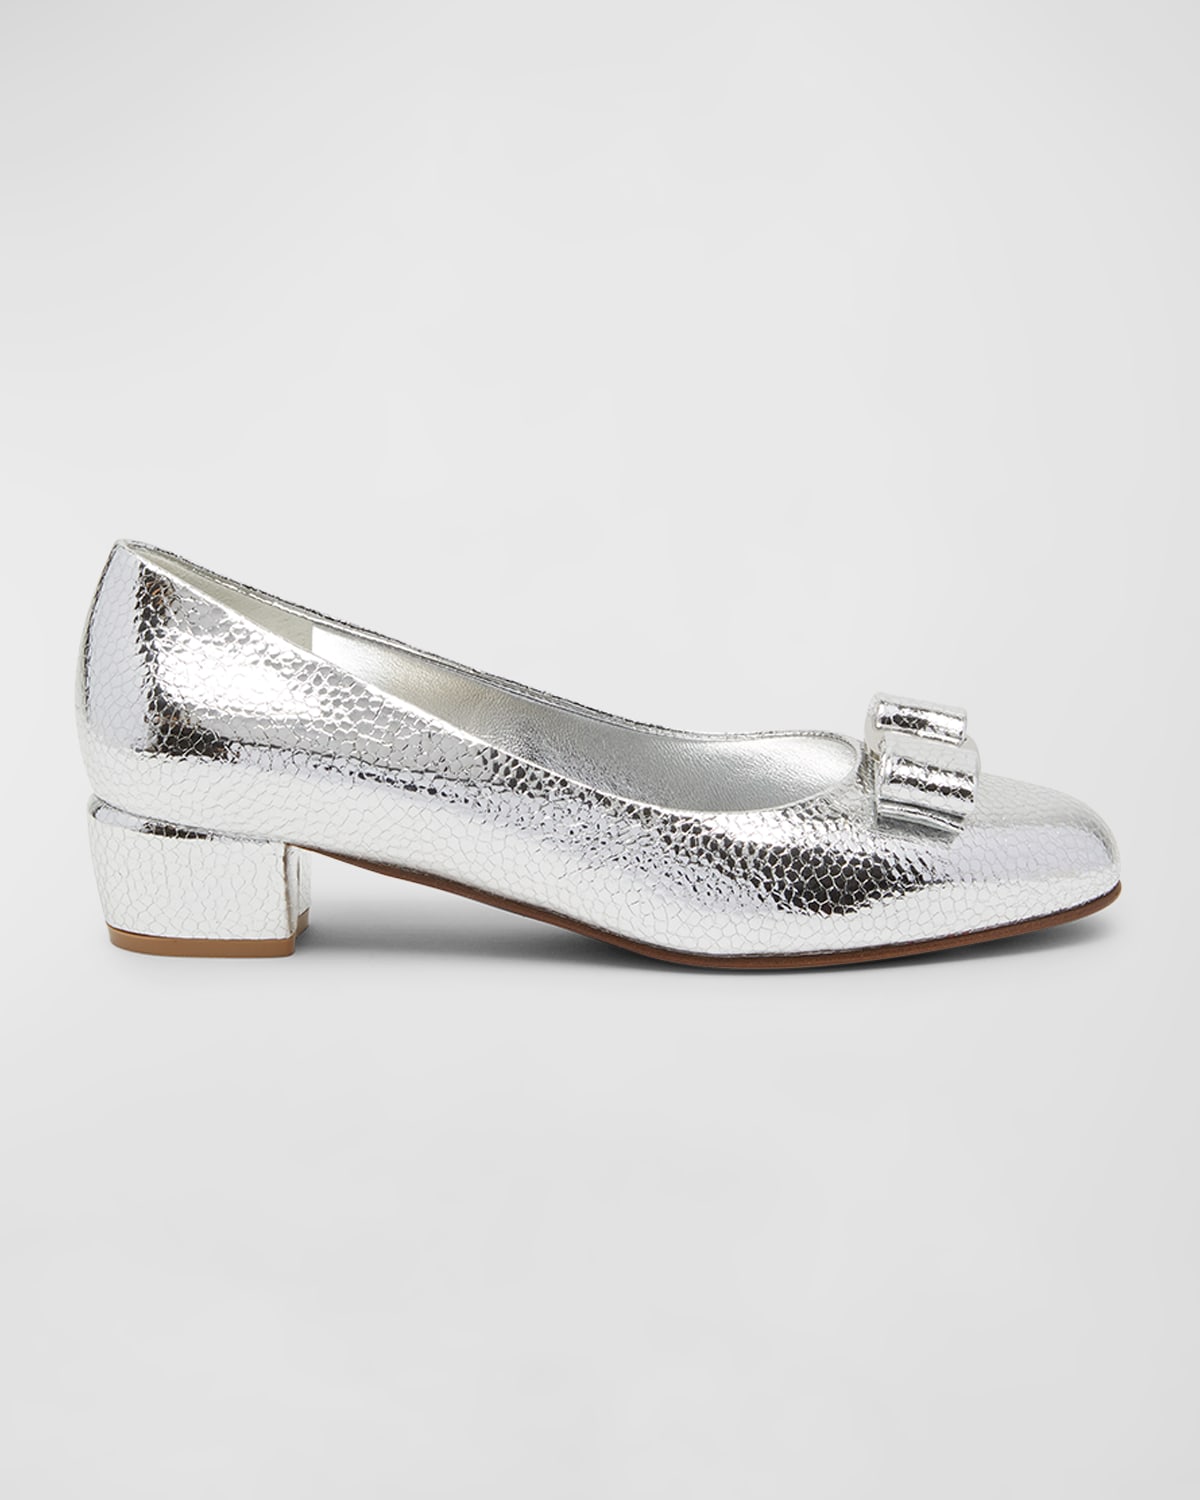 Ferragamo Woman Vara Bow Pump Shoe In Silver